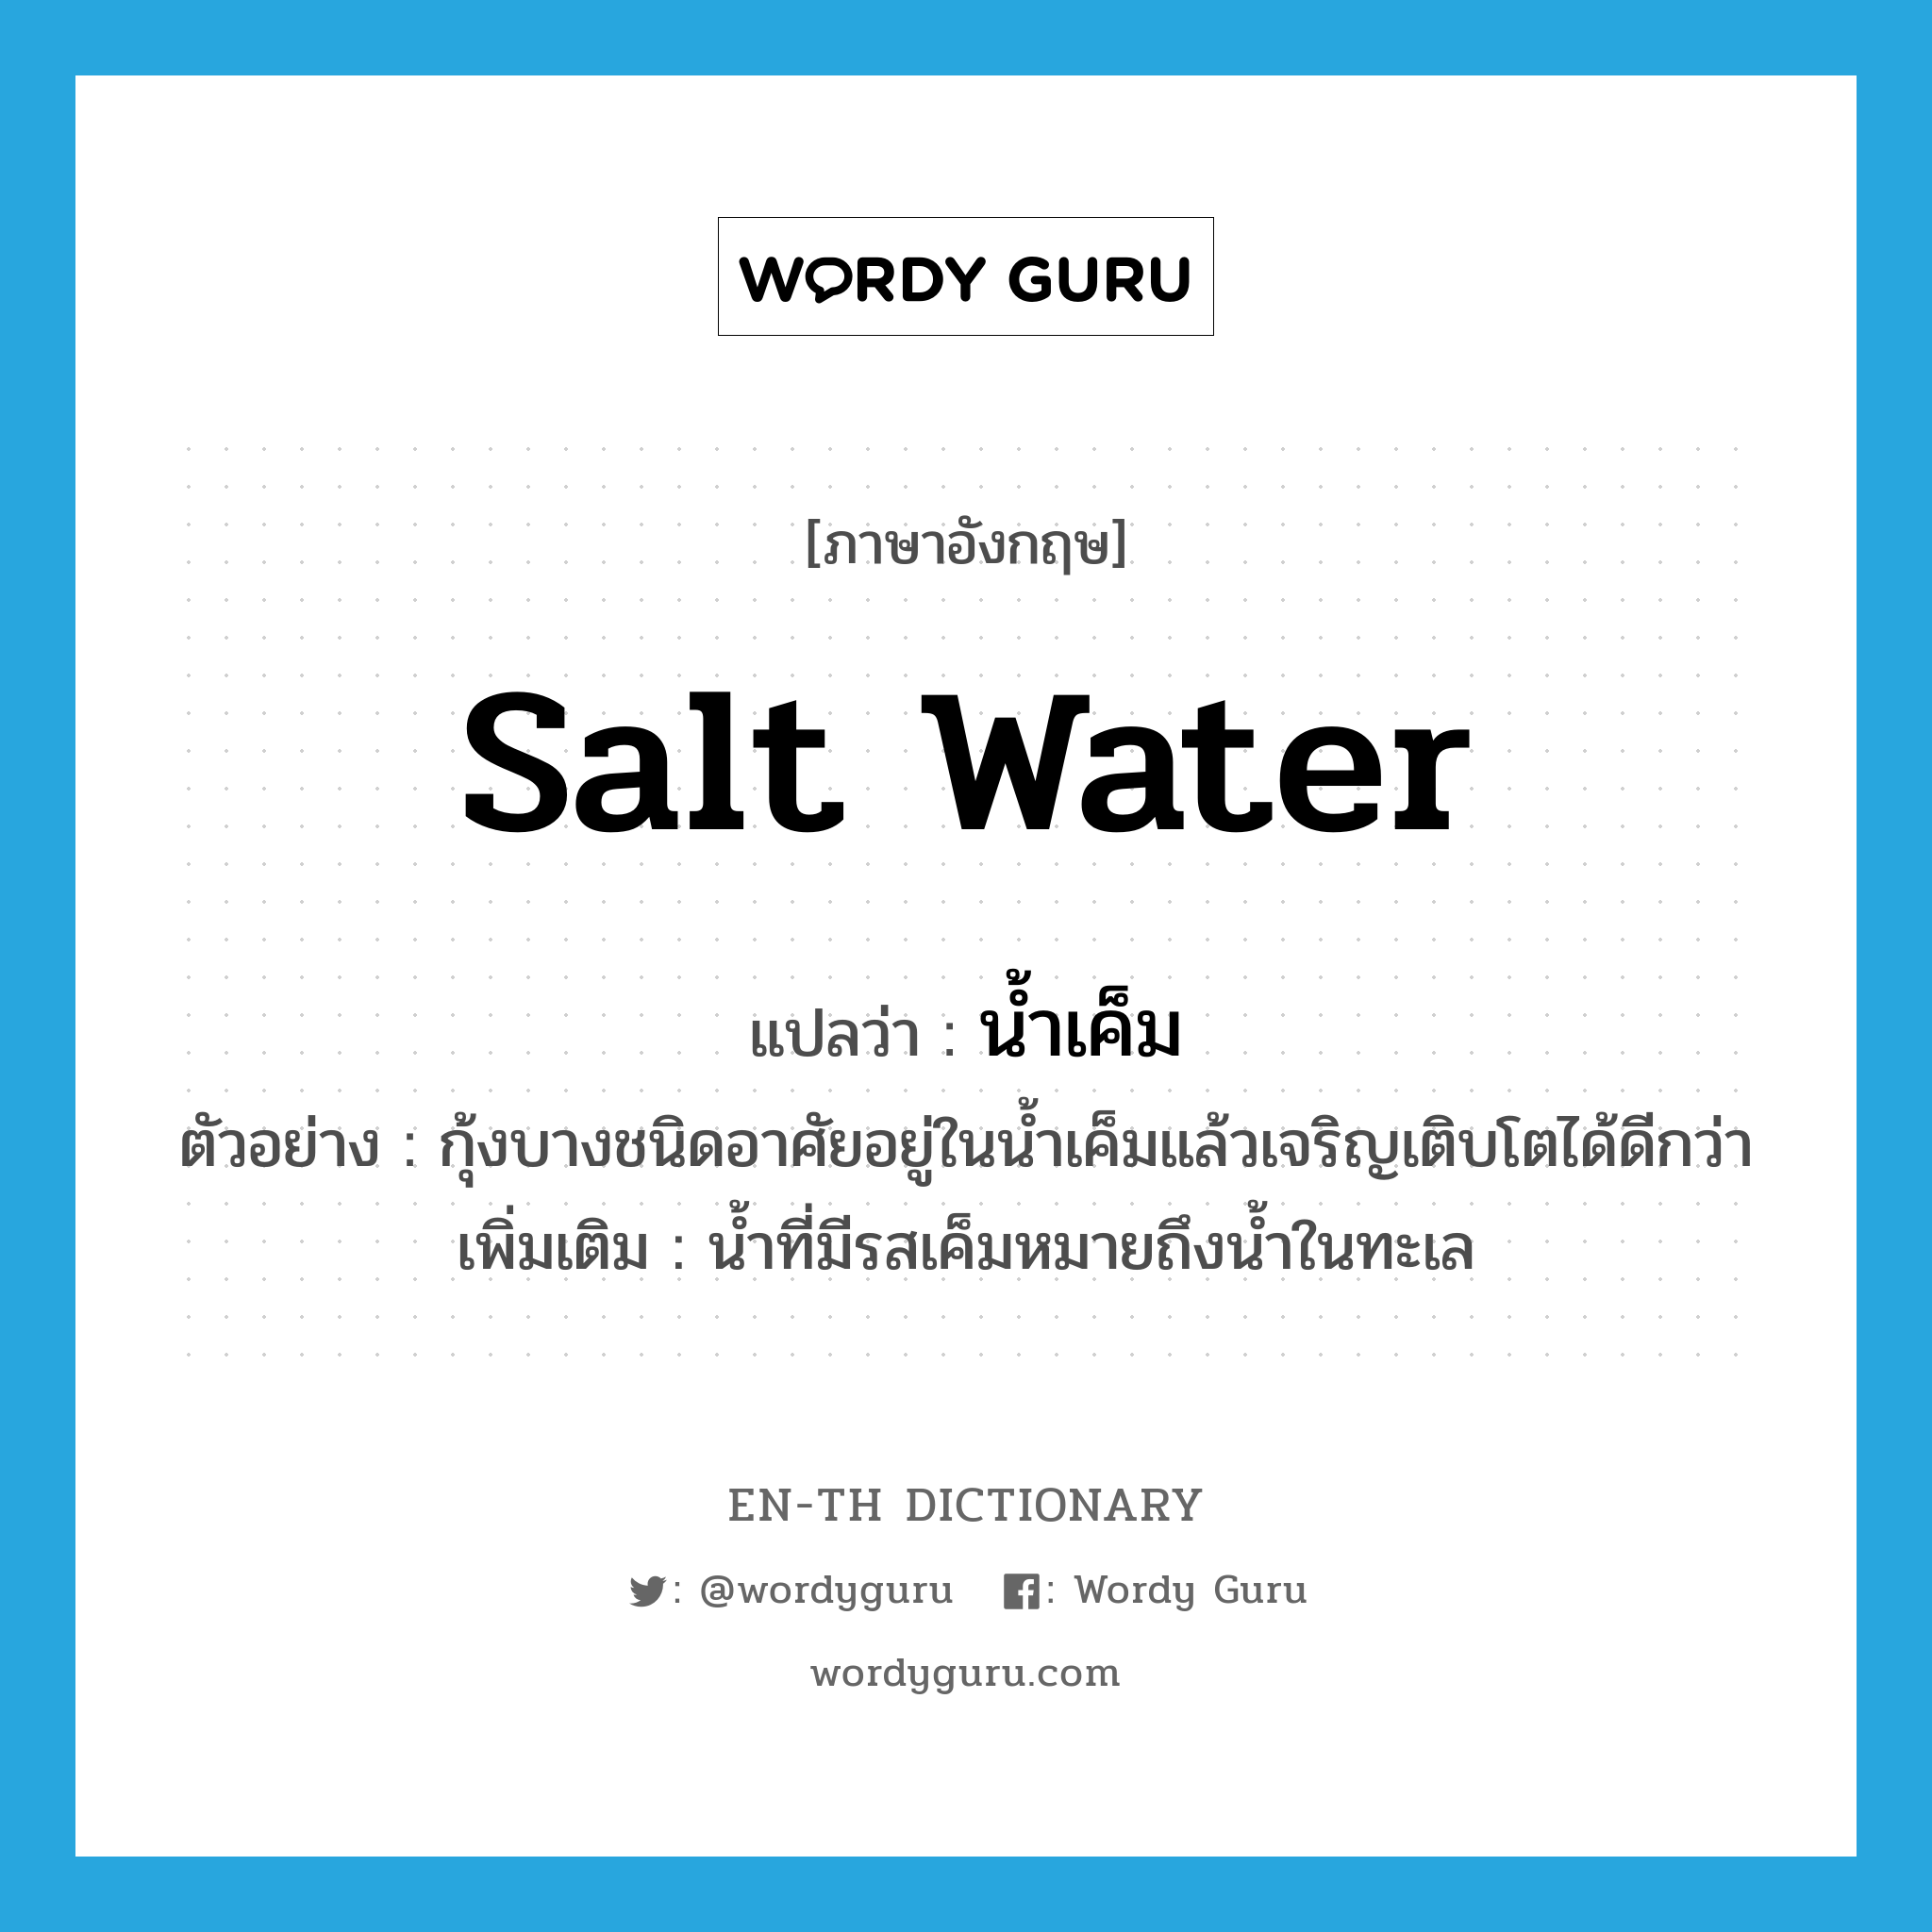 salt water แปลว่า?, คำศัพท์ภาษาอังกฤษ salt water แปลว่า น้ำเค็ม ประเภท N ตัวอย่าง กุ้งบางชนิดอาศัยอยู่ในน้ำเค็มแล้วเจริญเติบโตได้ดีกว่า เพิ่มเติม น้ำที่มีรสเค็มหมายถึงน้ำในทะเล หมวด N